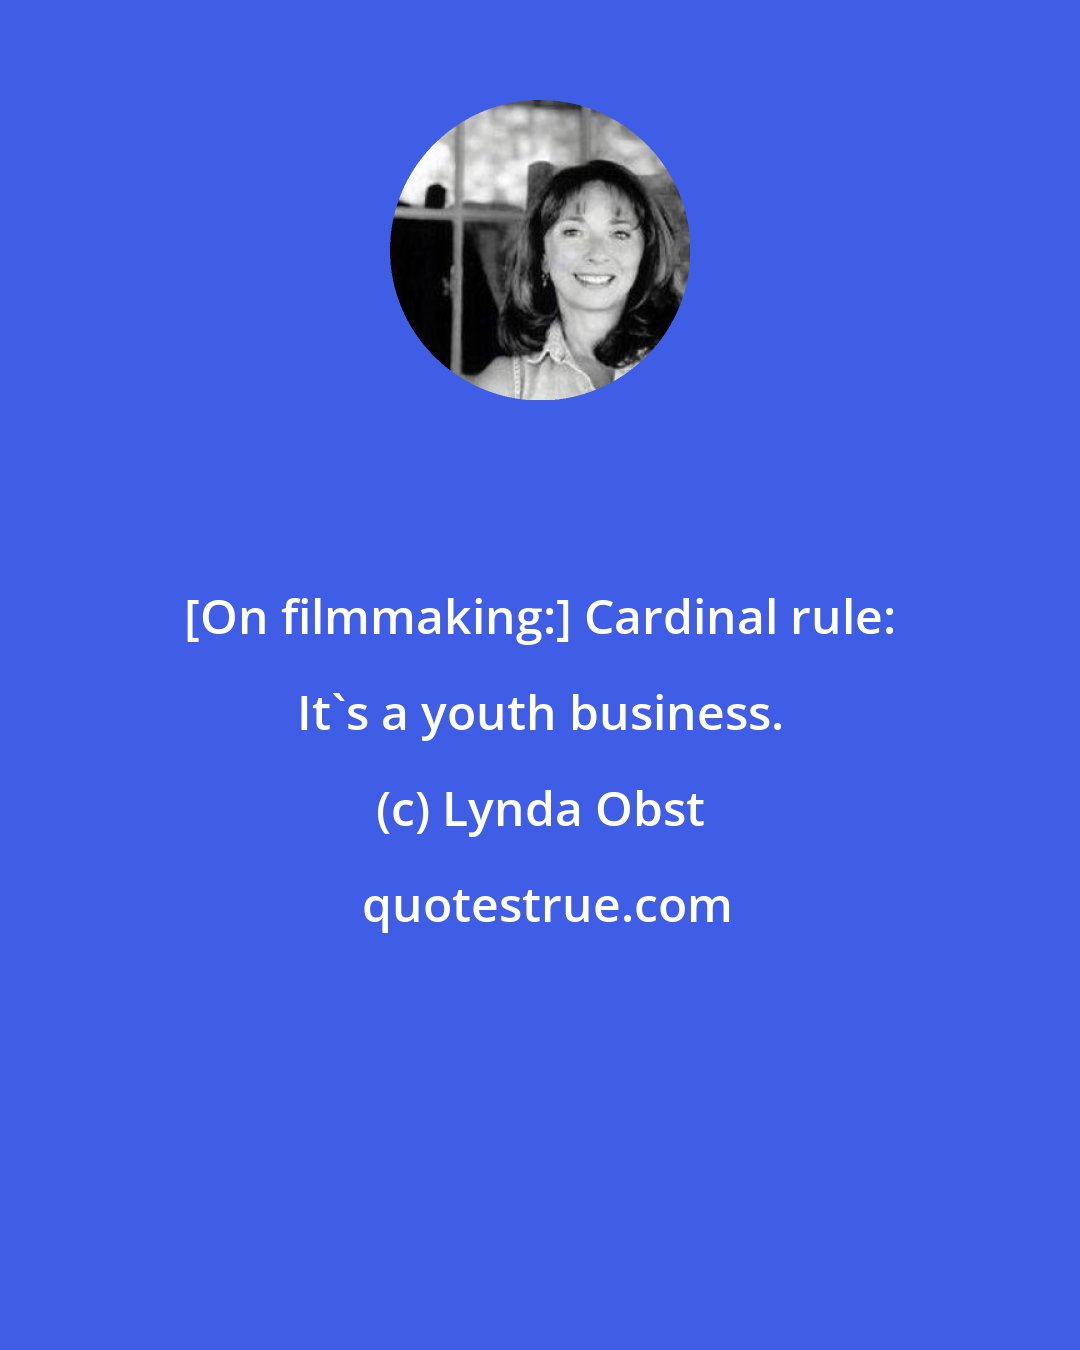 Lynda Obst: [On filmmaking:] Cardinal rule: It's a youth business.